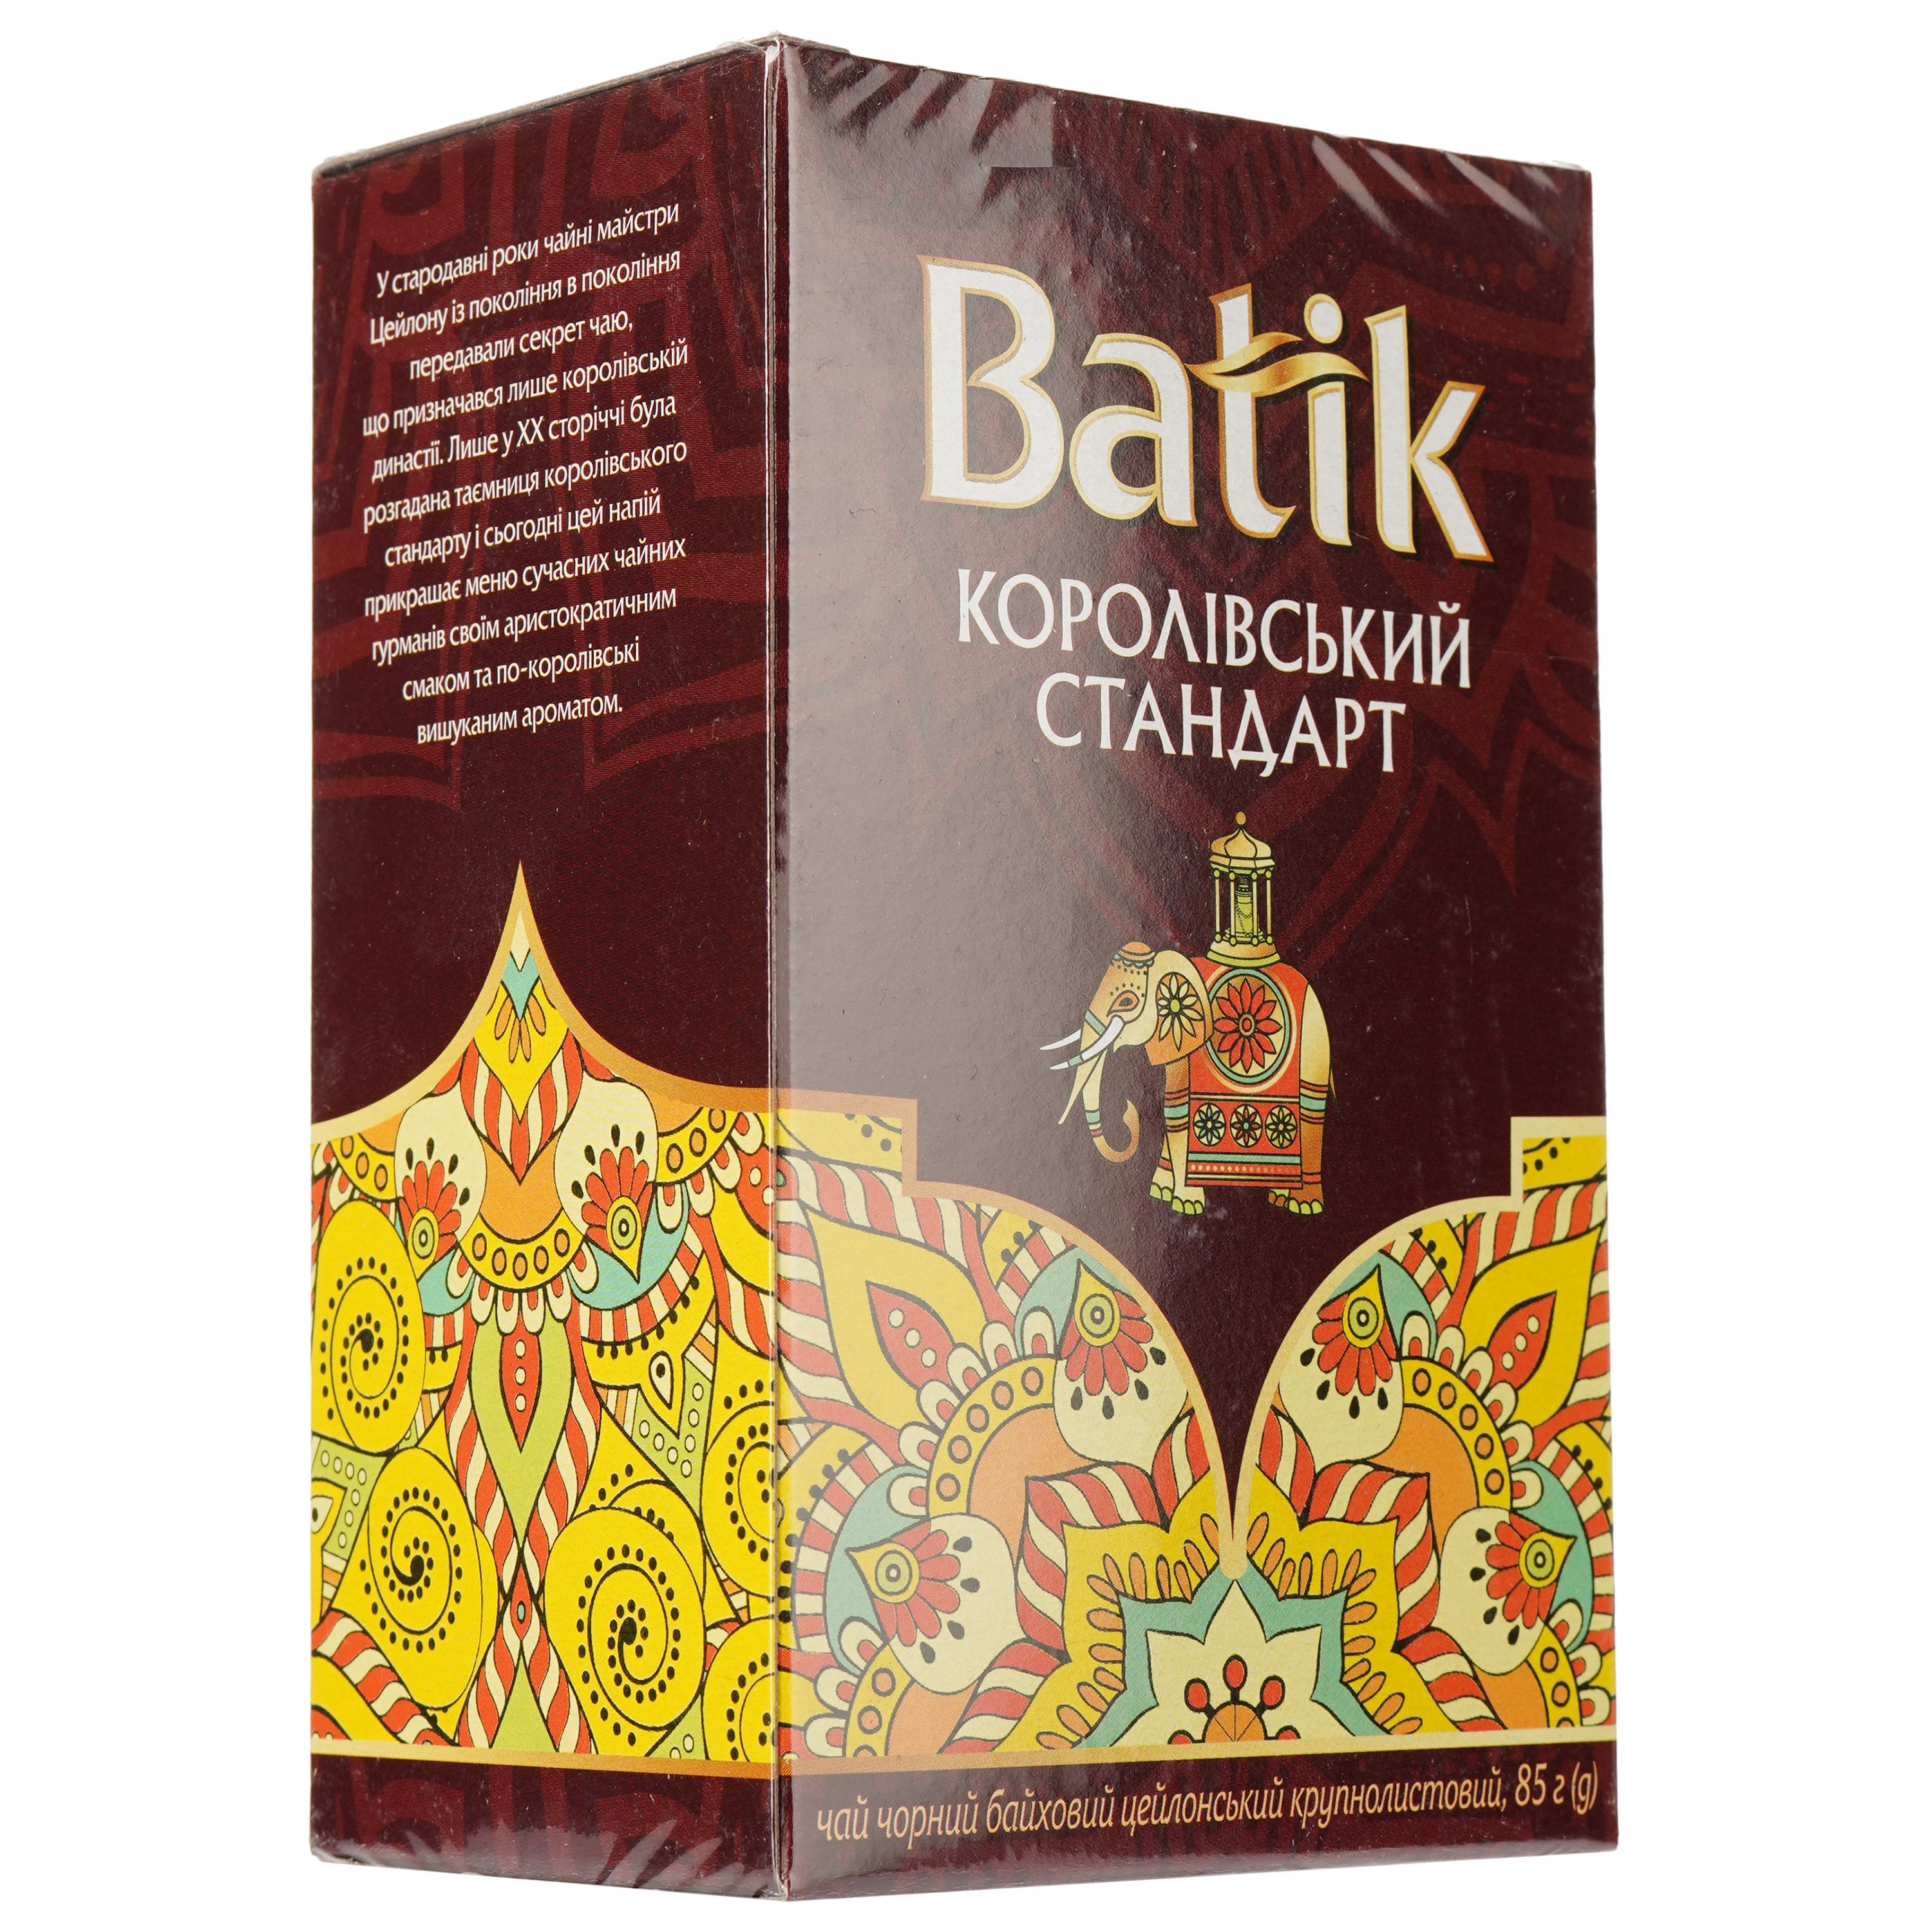 Чай черный Batik Королевский стандарт байховый, цейлонский, крупнолистовой, 85 г - фото 2